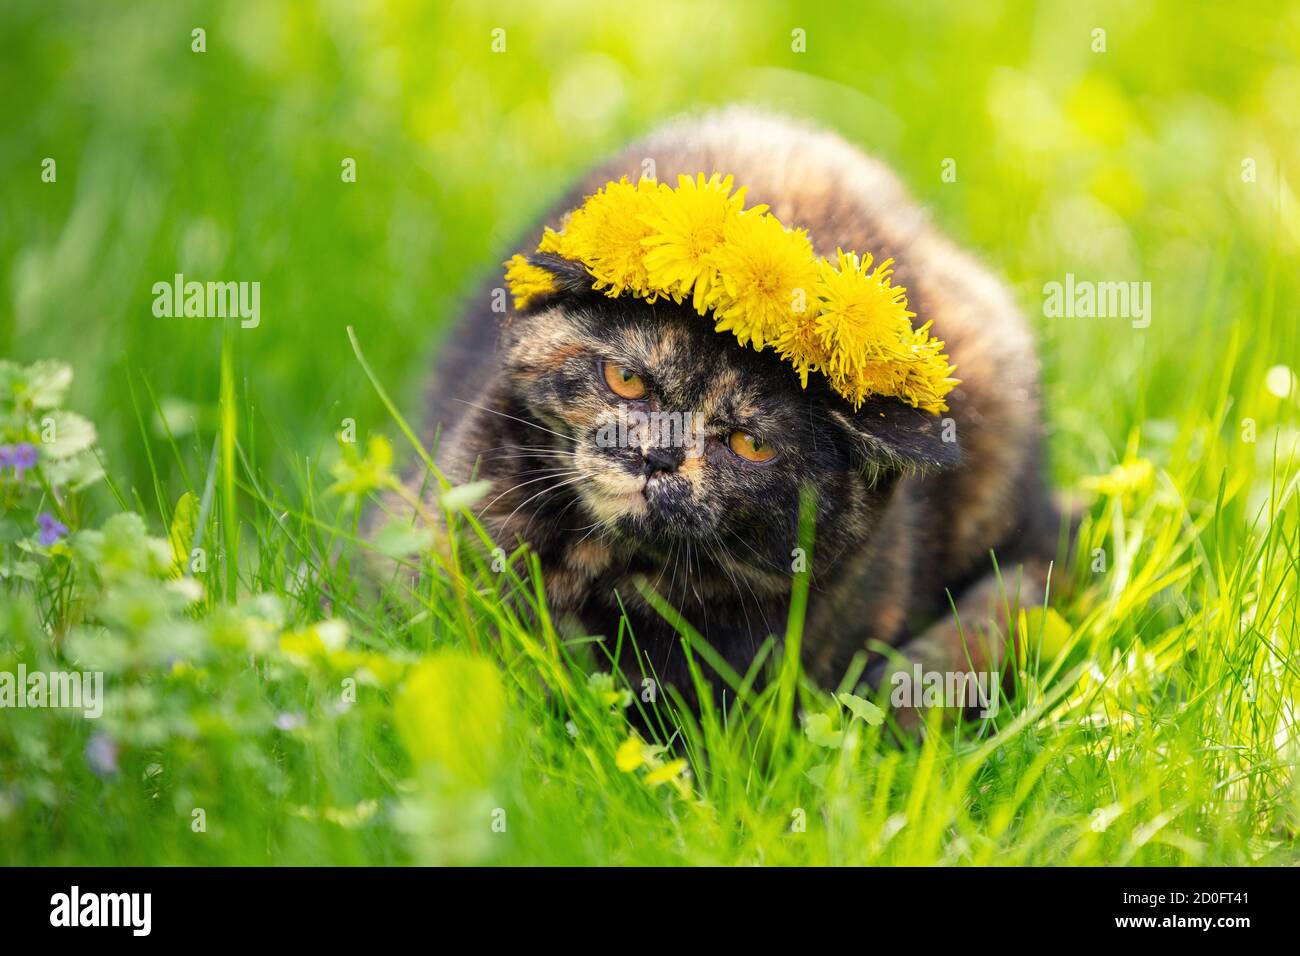 Drôle petit tortoiseshell chaton dans une couronne de fleurs de pissenlit repose sur l'herbe Banque D'Images